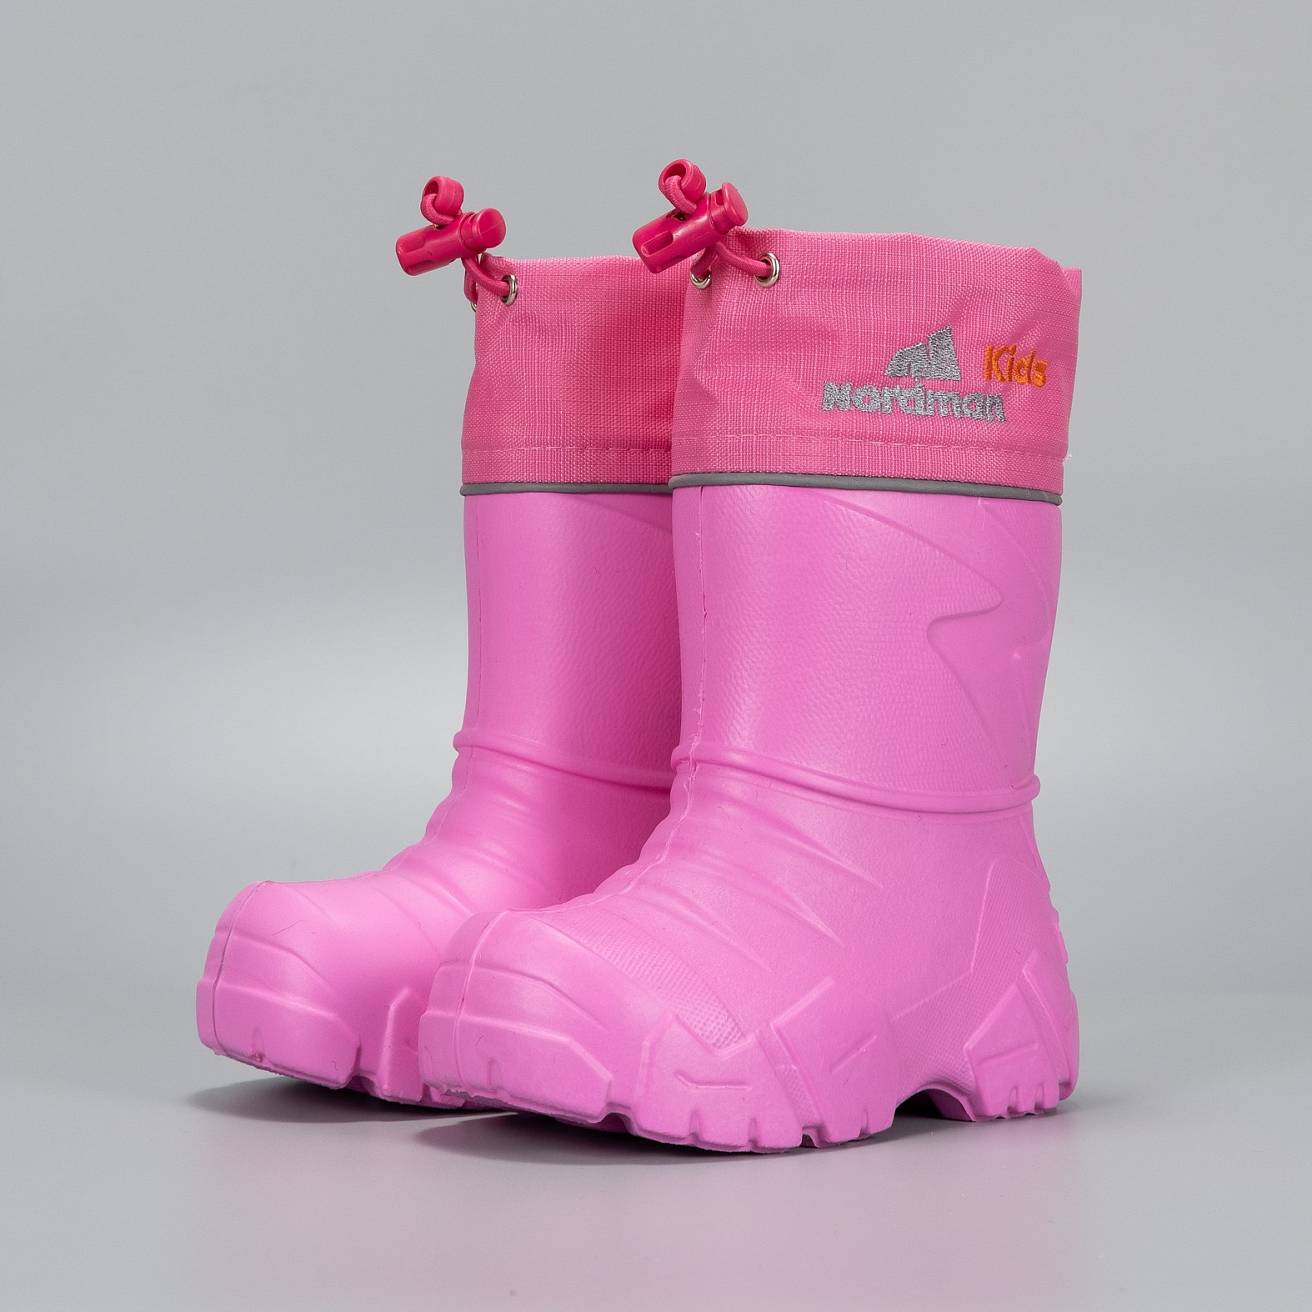 Сапоги Nordman Kids из ЭВА cо съемным мехом розовые - фото 1